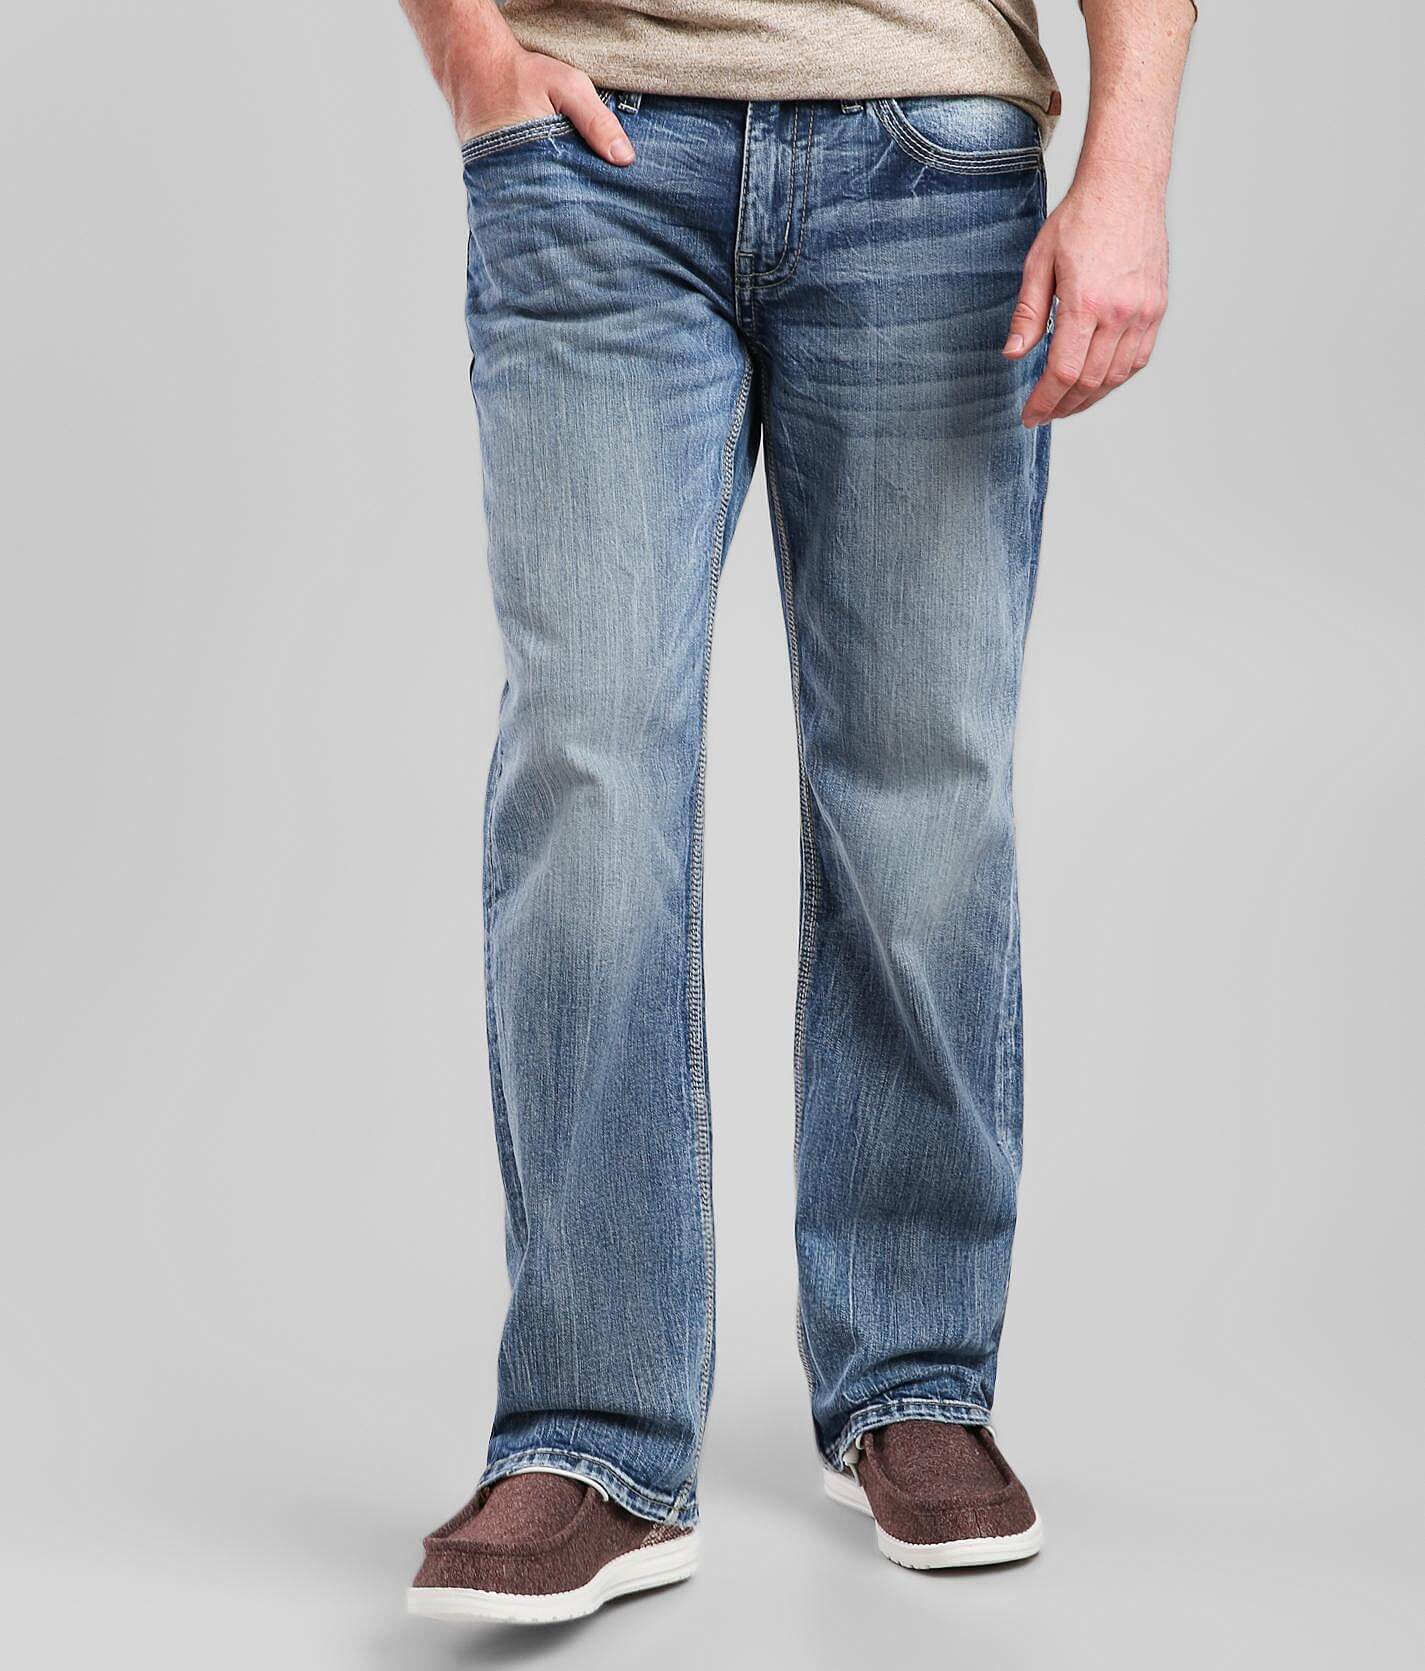 BKE Jake Boot Stretch Jean - Men's Jeans in Poort | Buckle